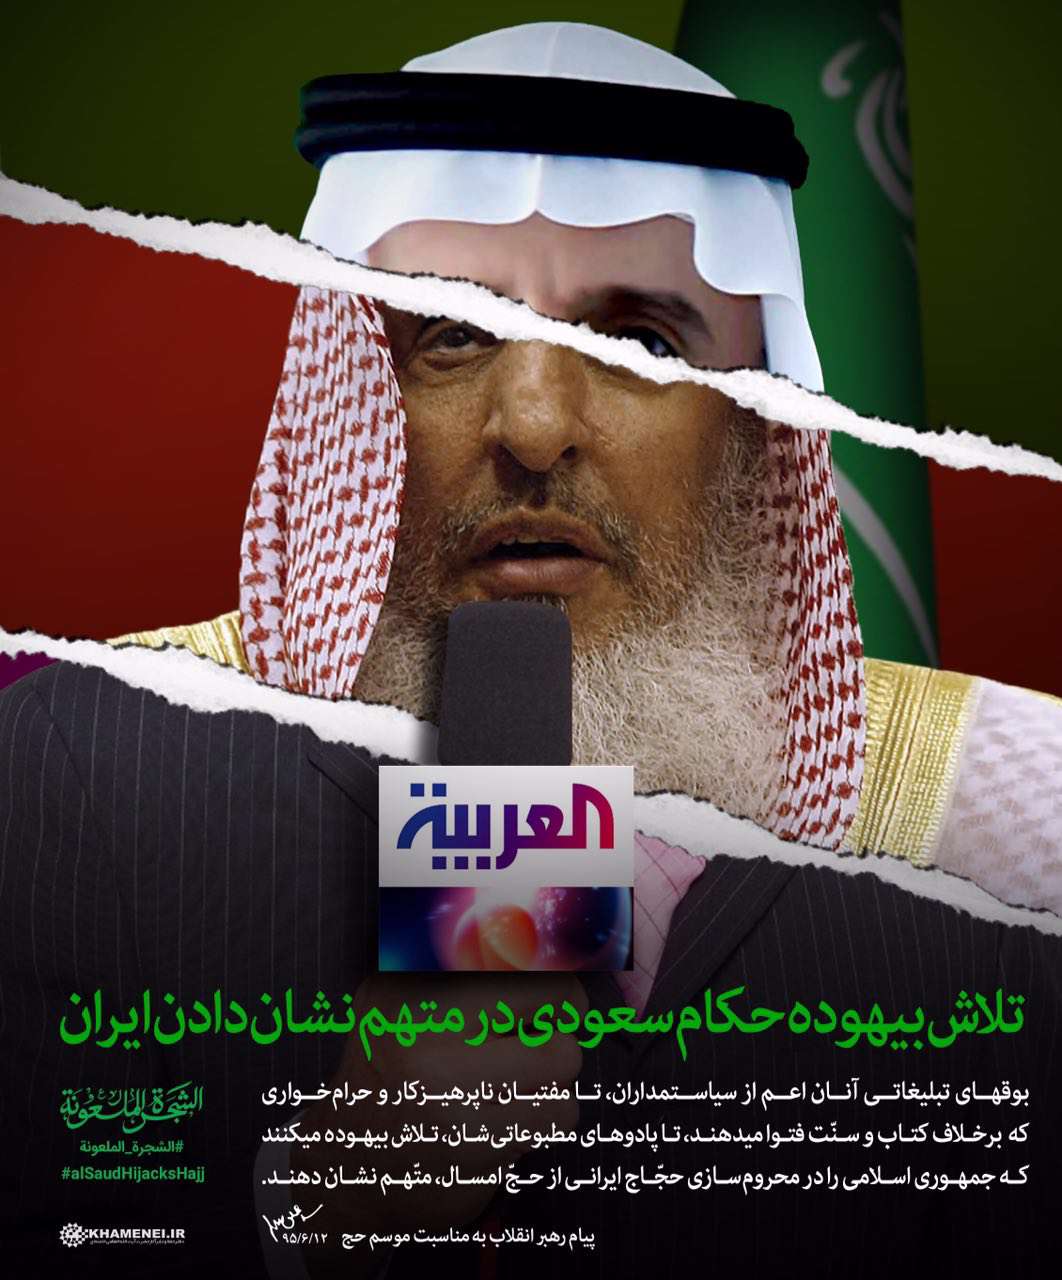 مفتیان ناپرهیزکار و حرامخوار سعودی تلاش بیهوده میکنند ایران را متهم کنند